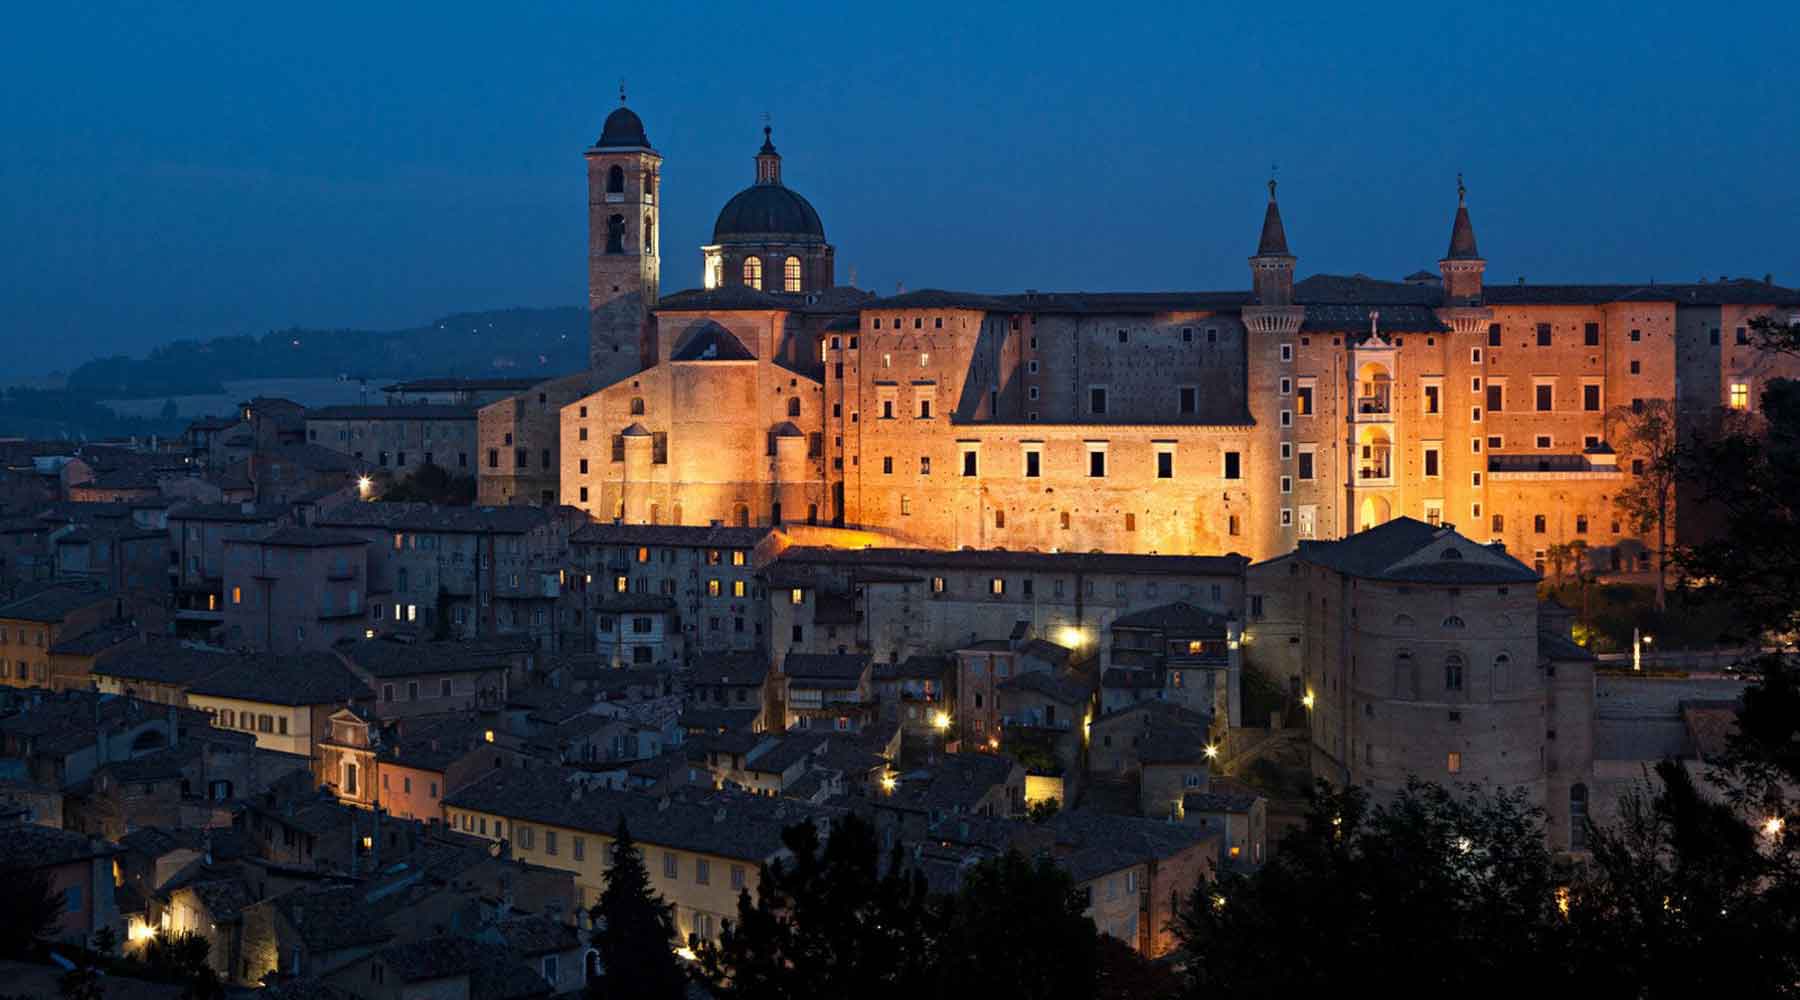 Urbino by night